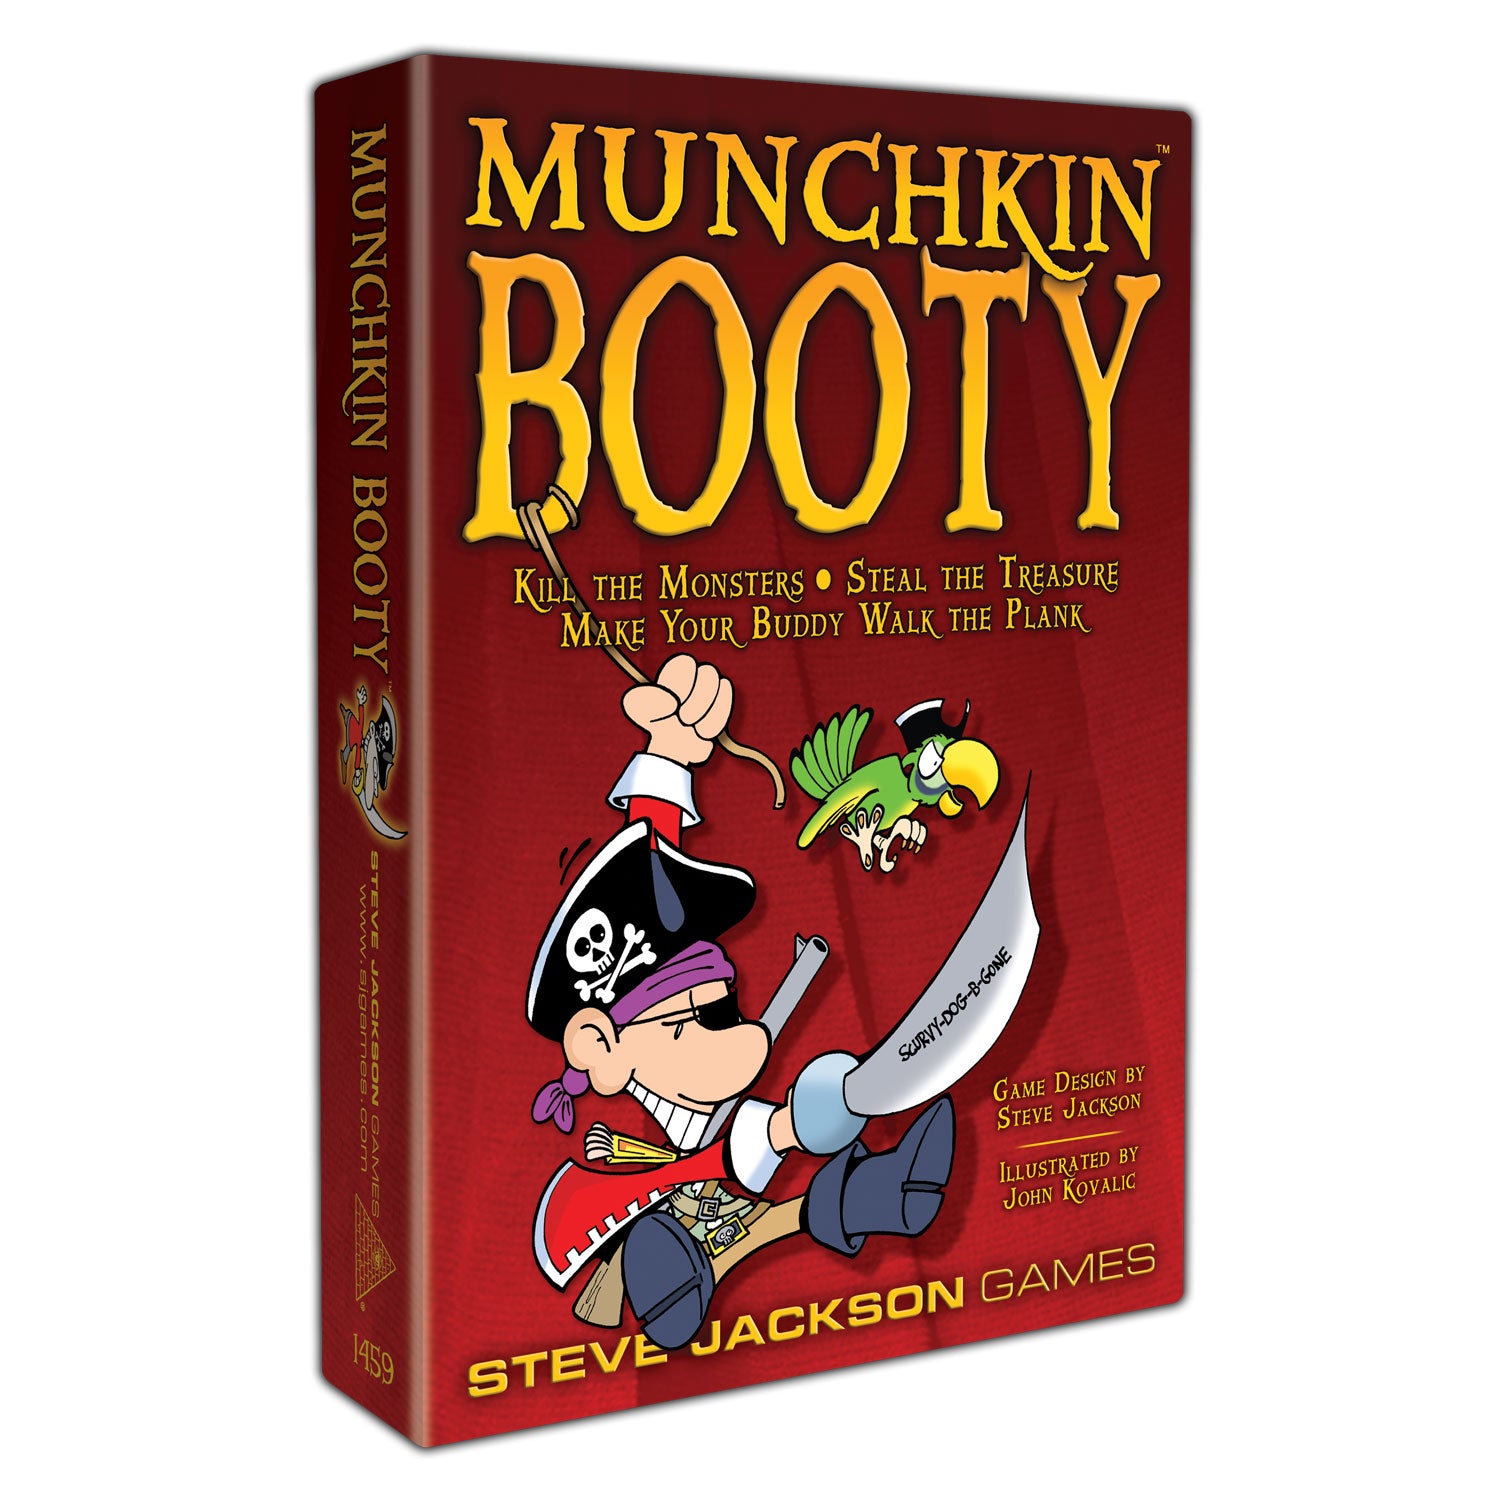 Munchkin: Munchkin Booty (Revised)